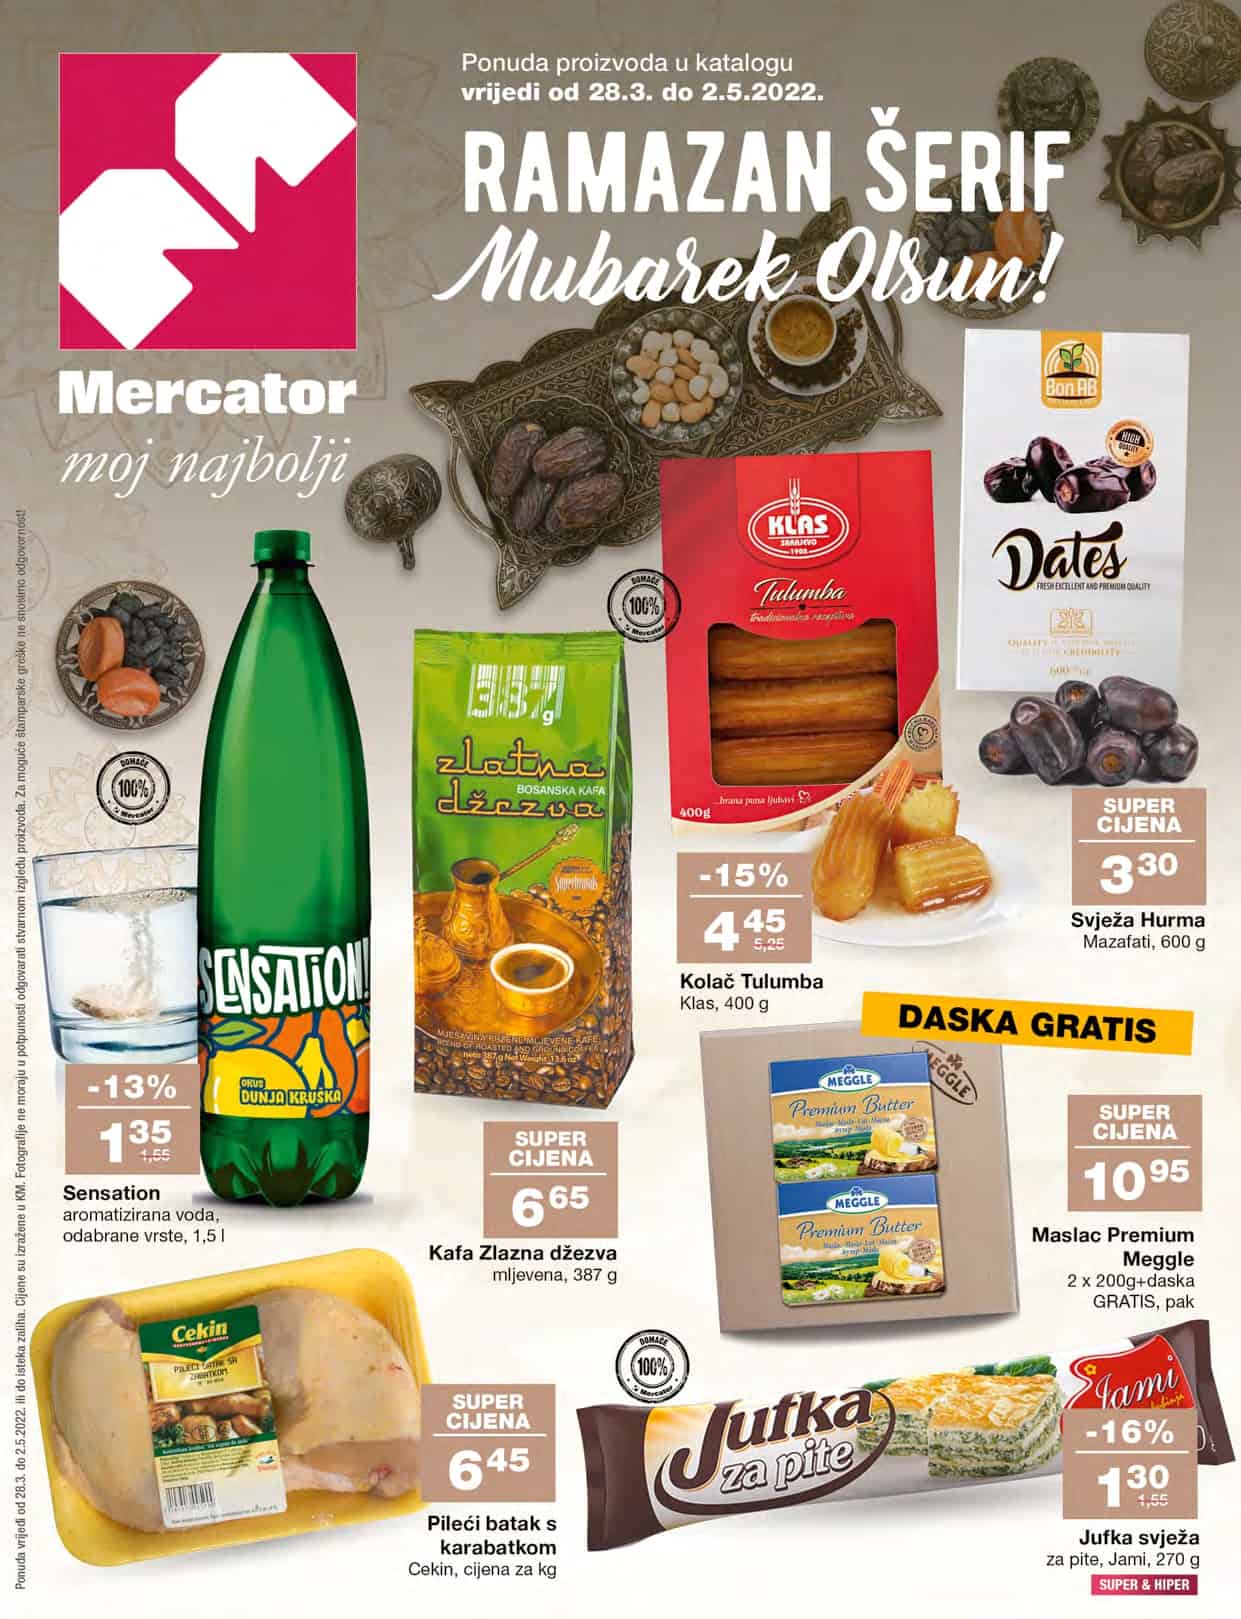 Mercator katalog nam uvijek donese super akcijske cijene prehrambenih proizvoda. U susret Razmaznu MERCATOR RAMAZANSKA AKCIJA nam donosi popuste i do 31%! Pogledajte Mercator Katalog uštedite novac.